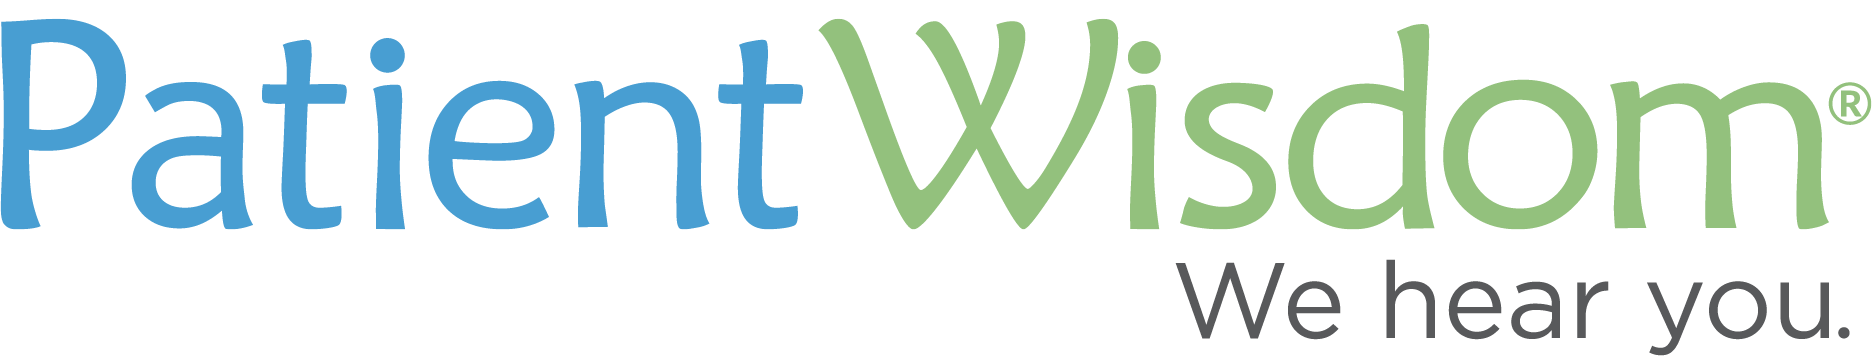 PatientWisdom logo